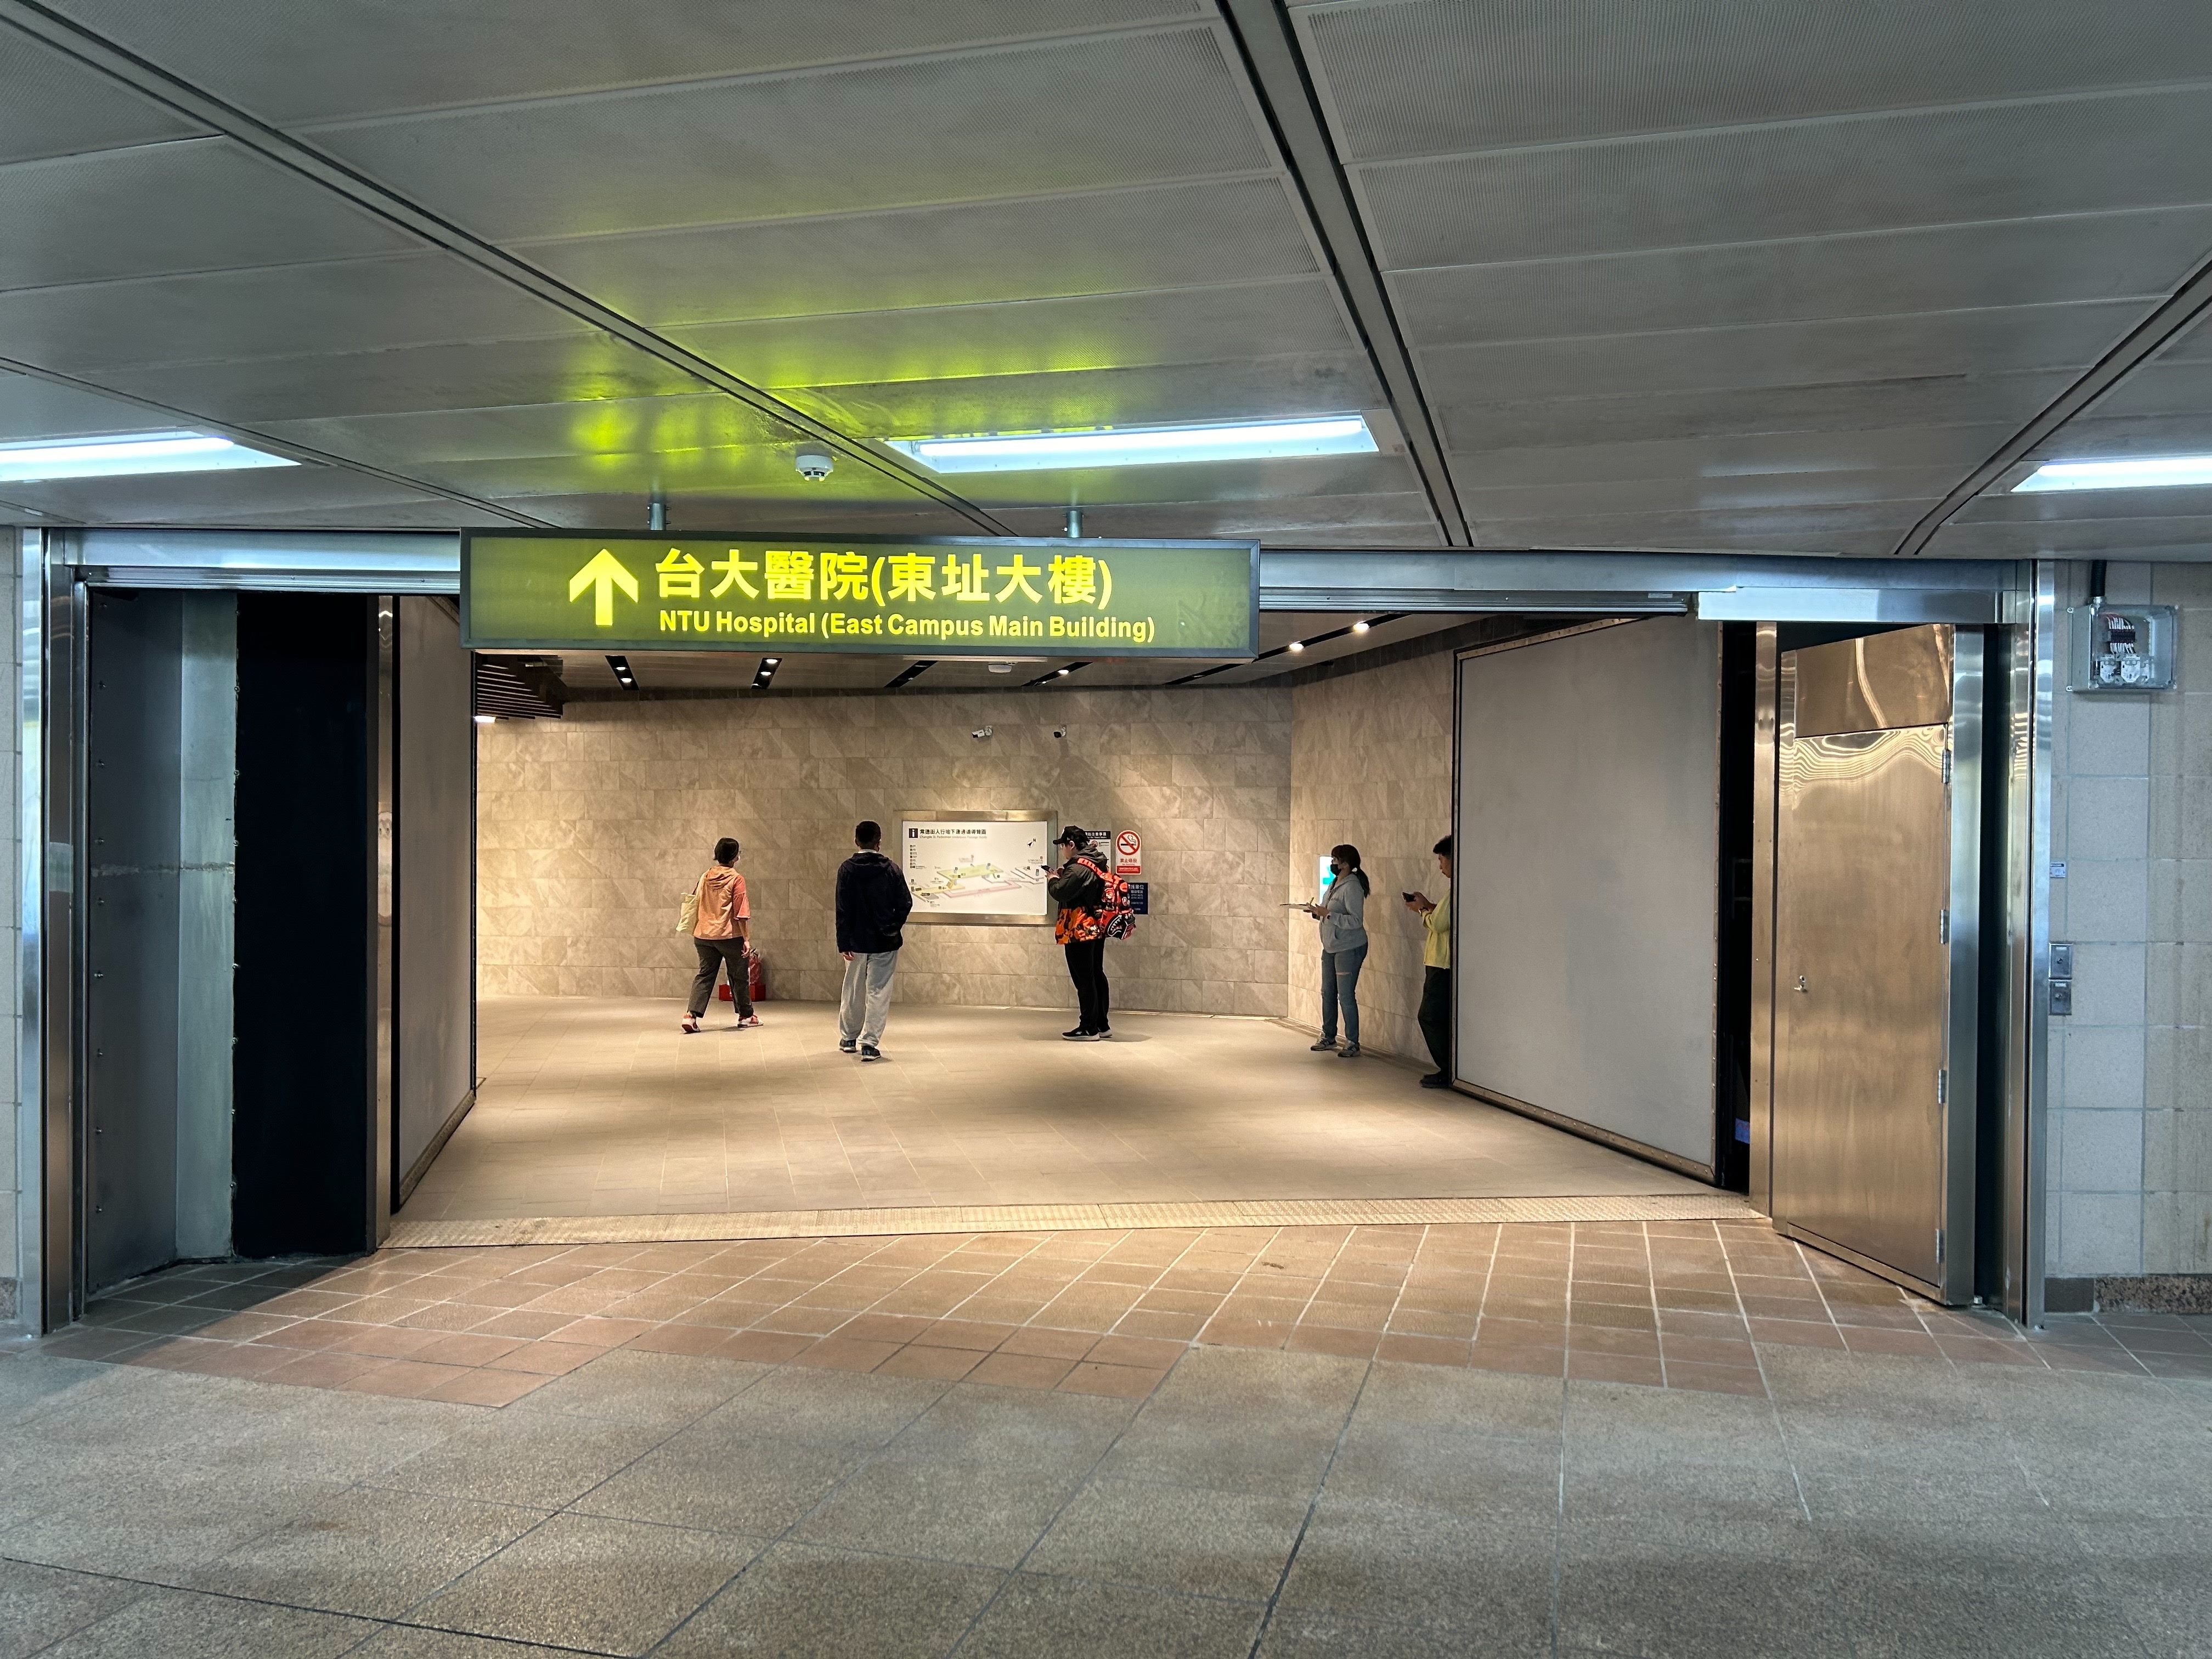 台北常德街人行地下道開放通行  提供行人更友善的無障礙通行空間